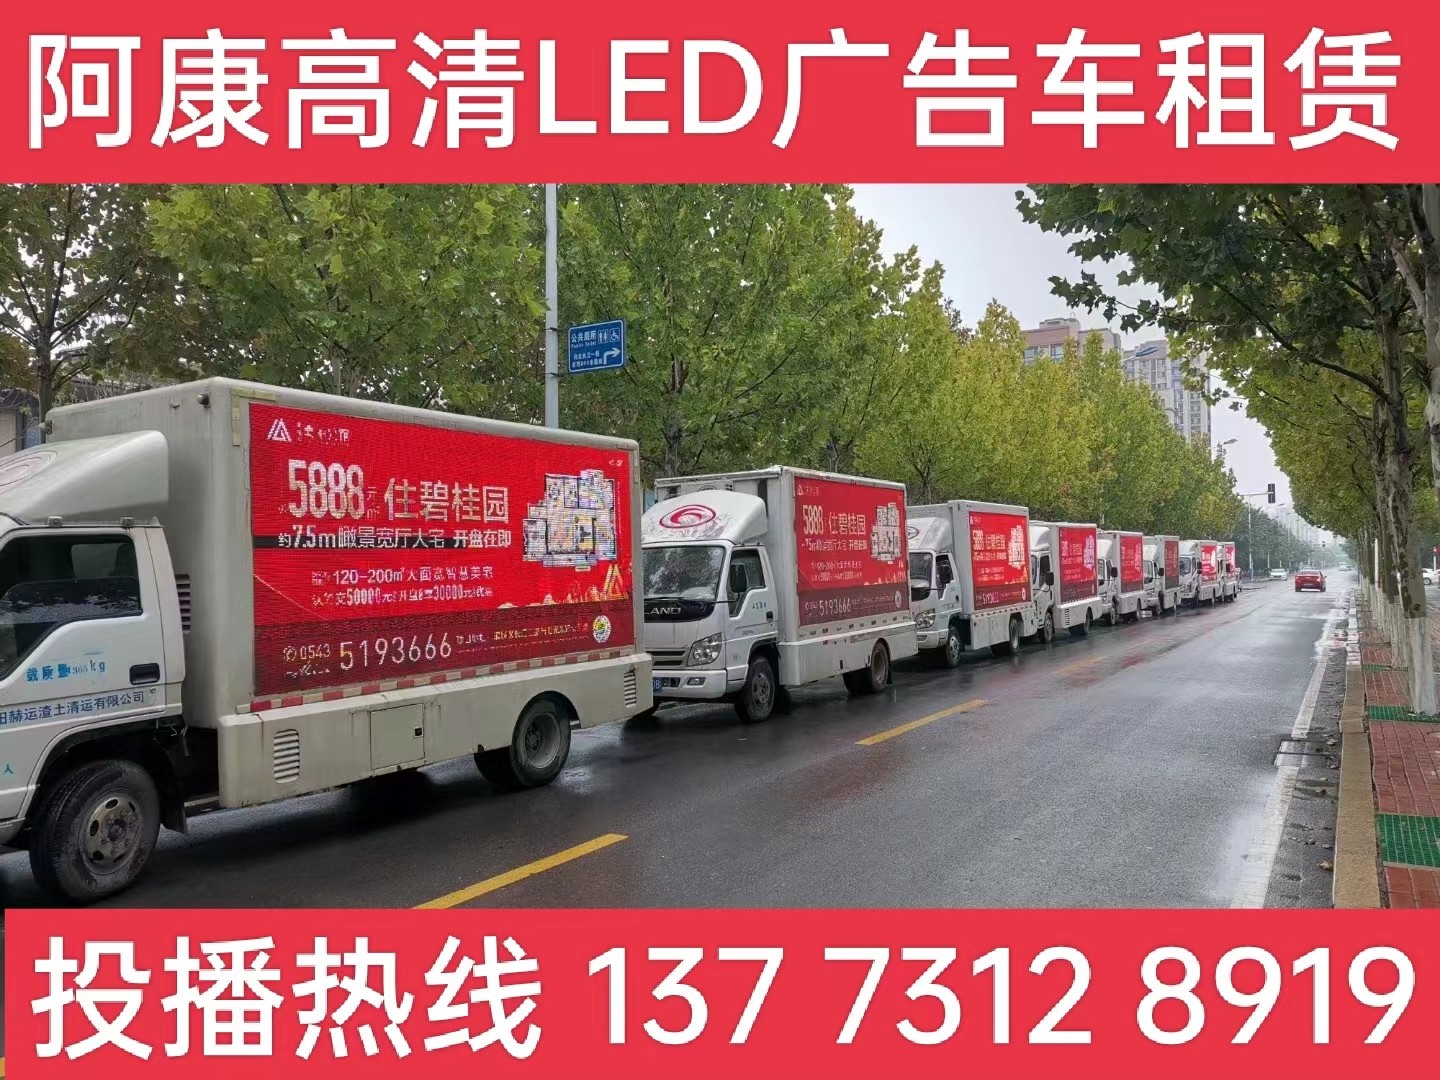 滁州宣传车租赁公司-楼盘LED广告车投放